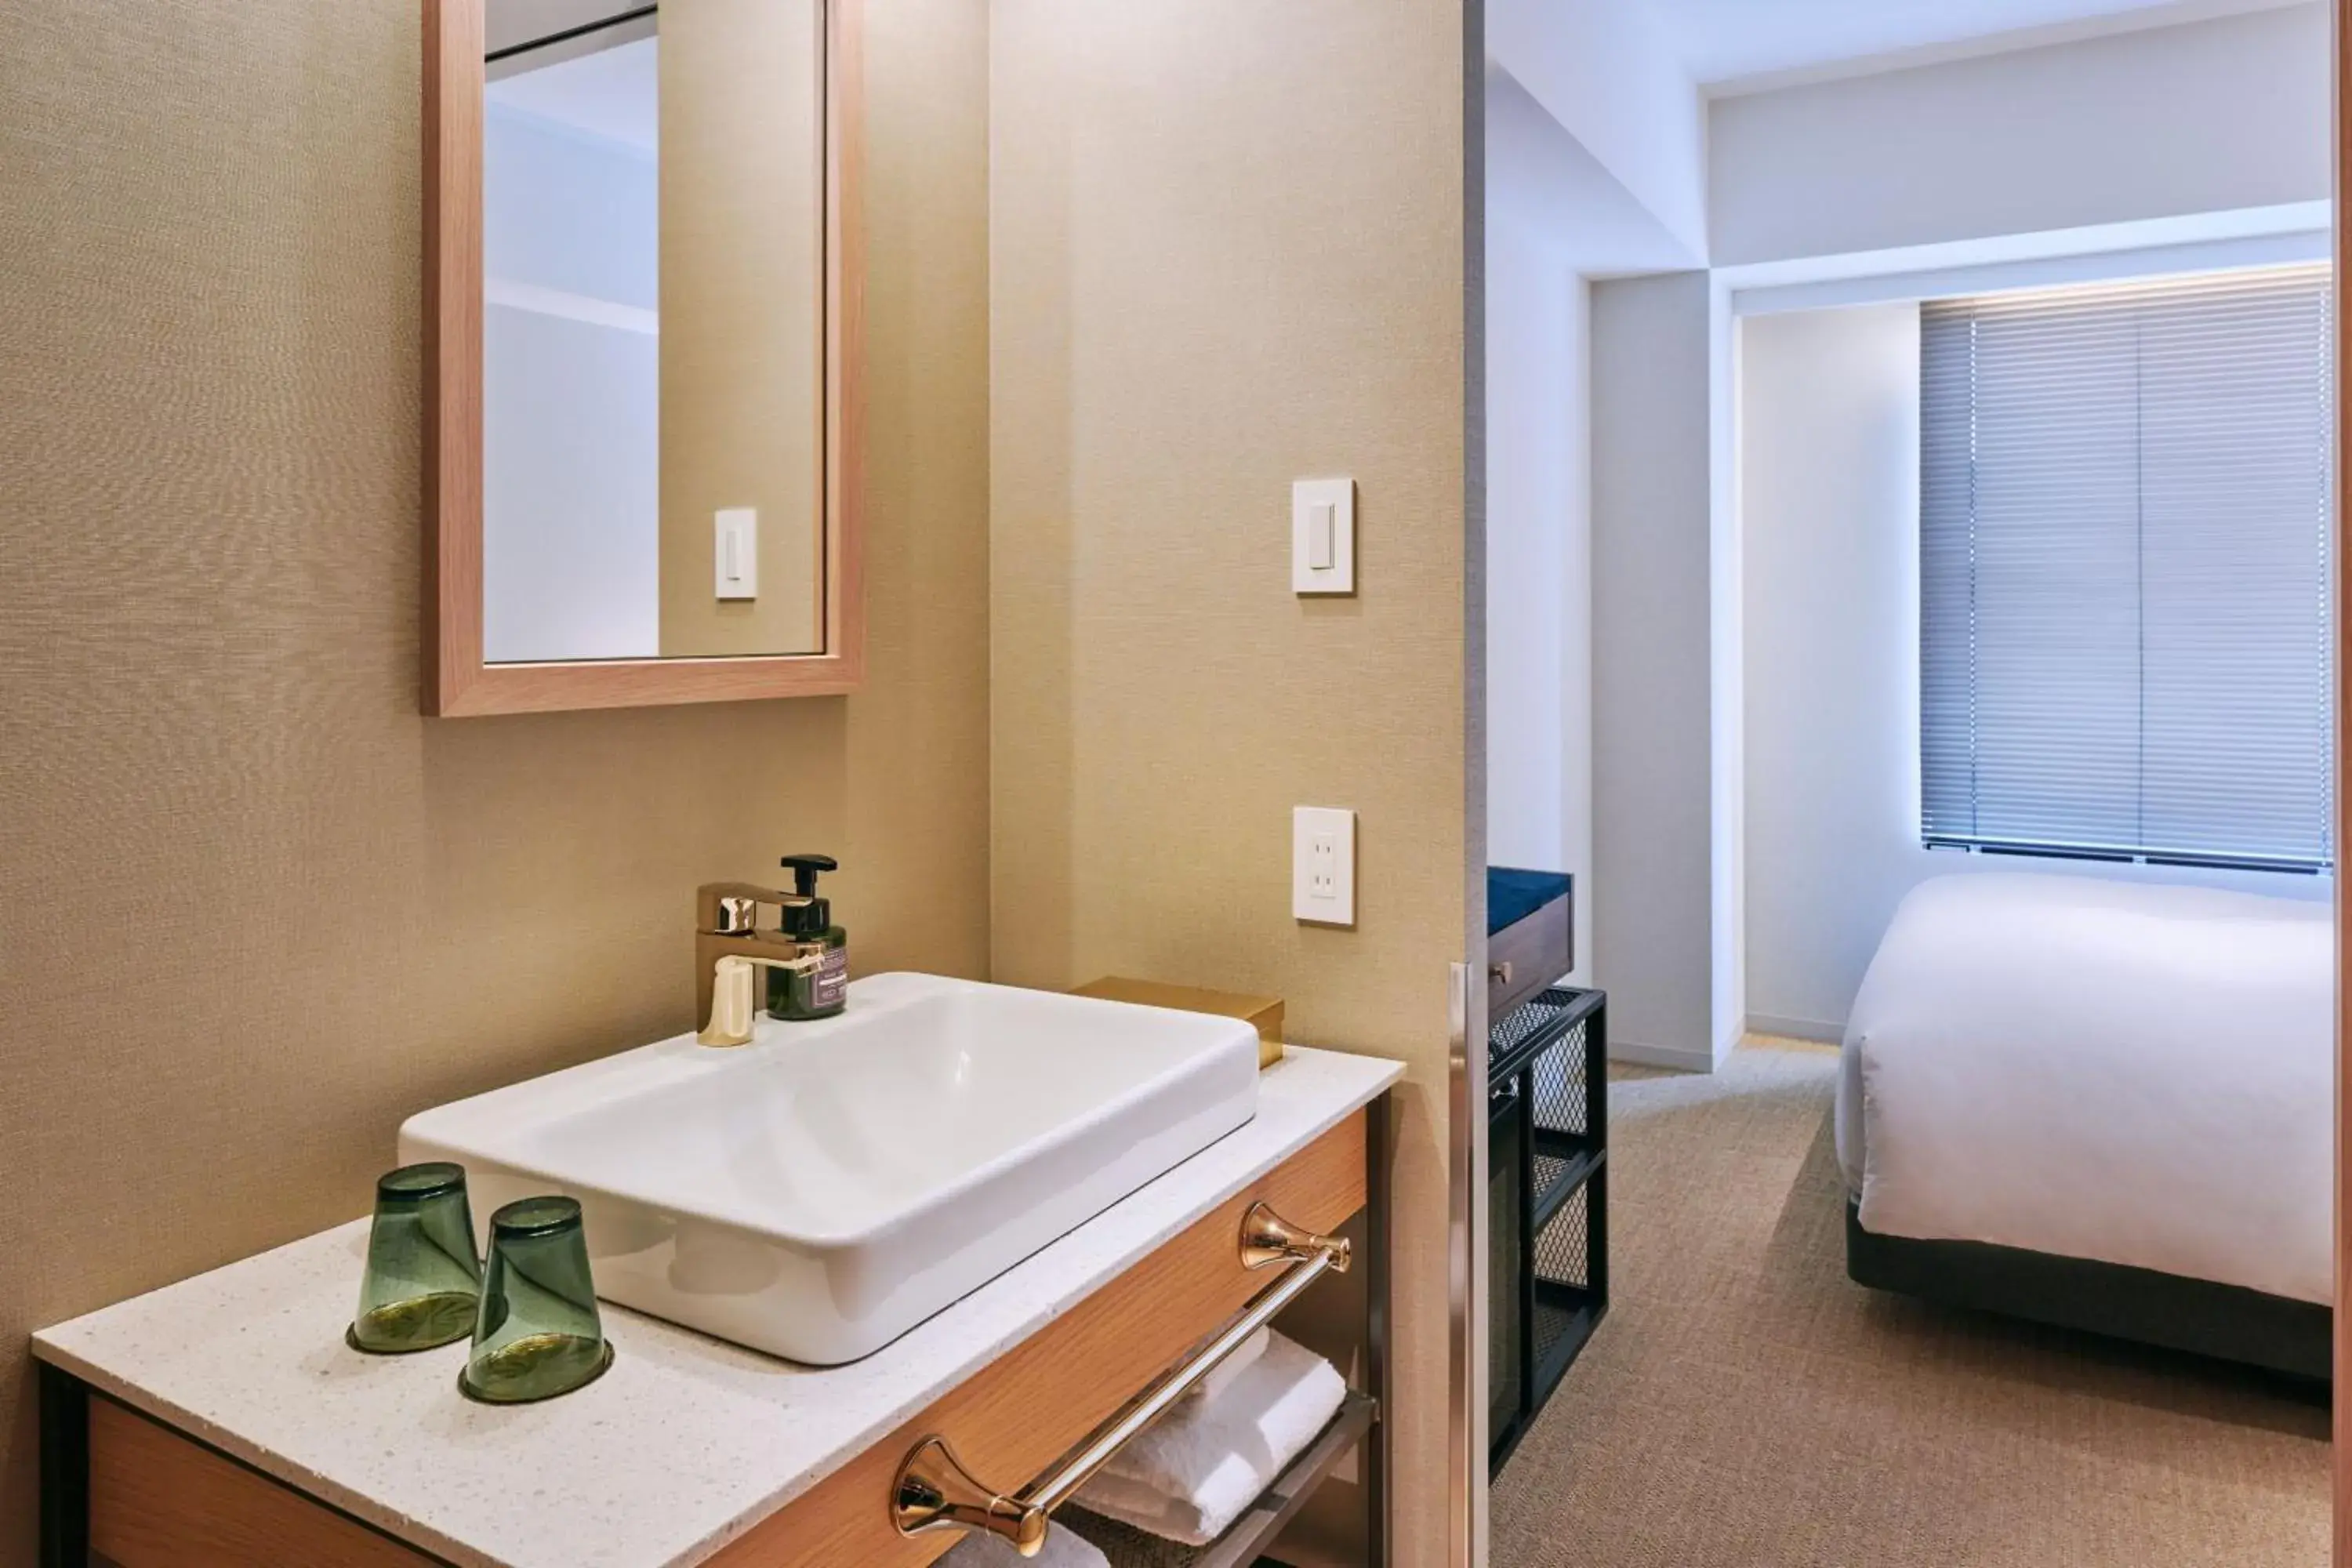 Photo of the whole room, Bathroom in NOHGA HOTEL AKIHABARA TOKYO